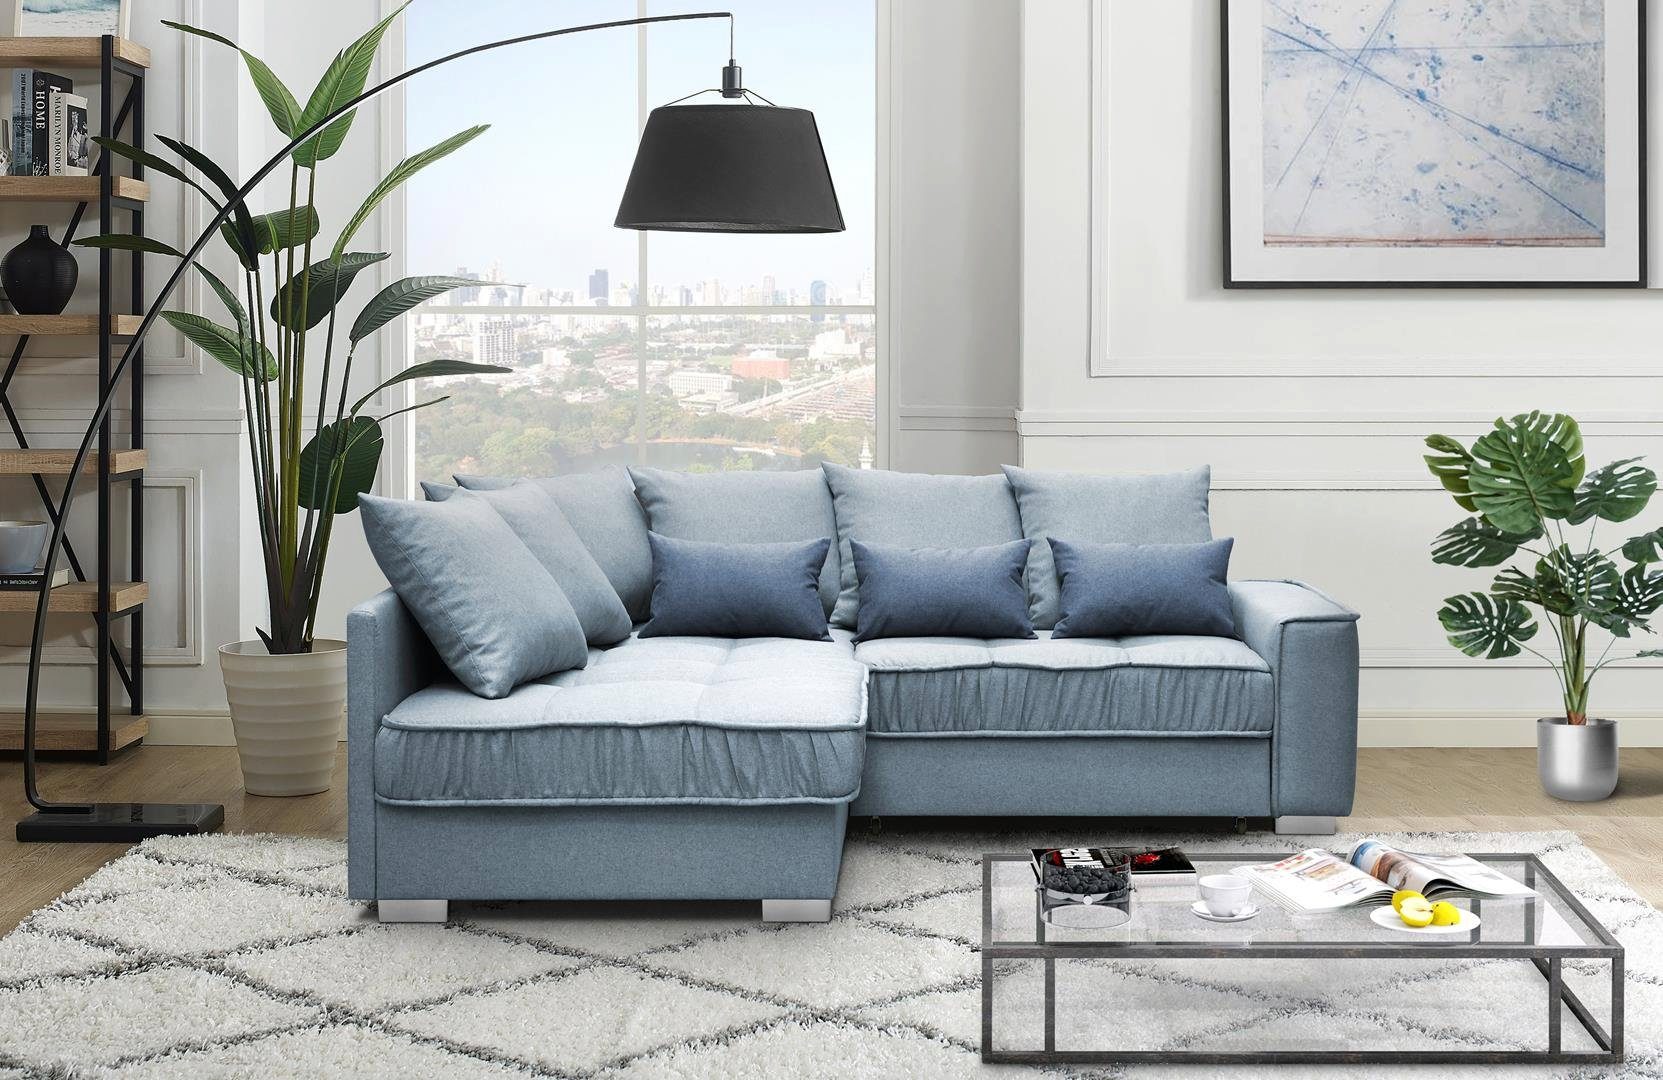 Beautysofa Polsterecke Modern Eckcouch Couch Ralf mit Bettkasten und Schlaffunktion Sofa Blau (rino 73 + rino 79)